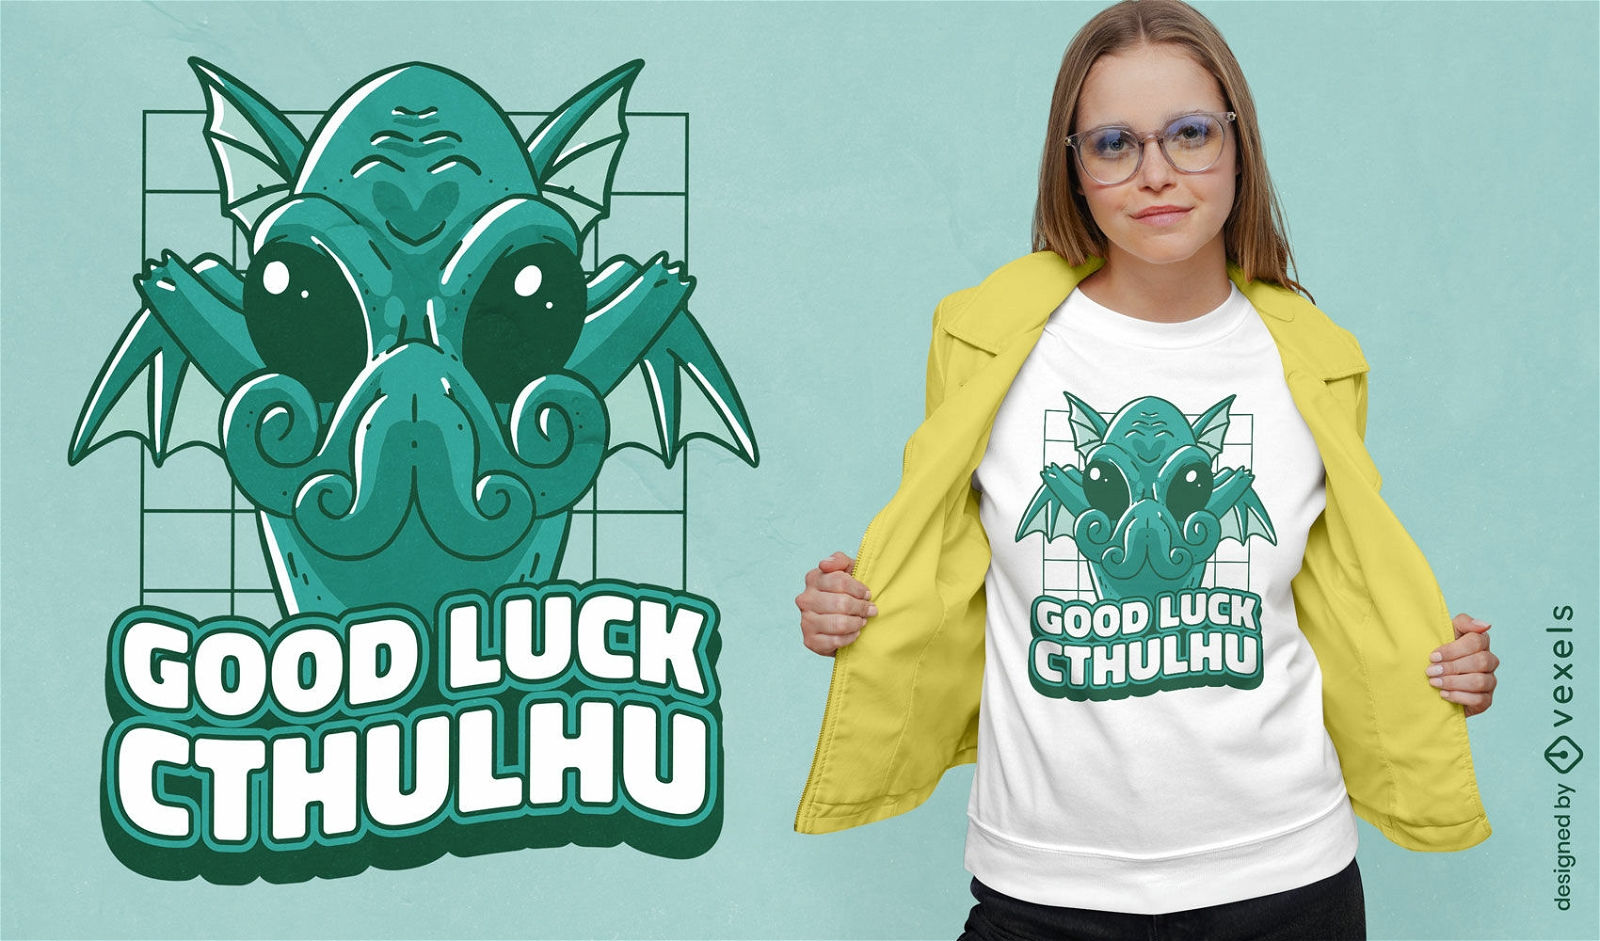 Cthulhu lucky monster t-shirt design